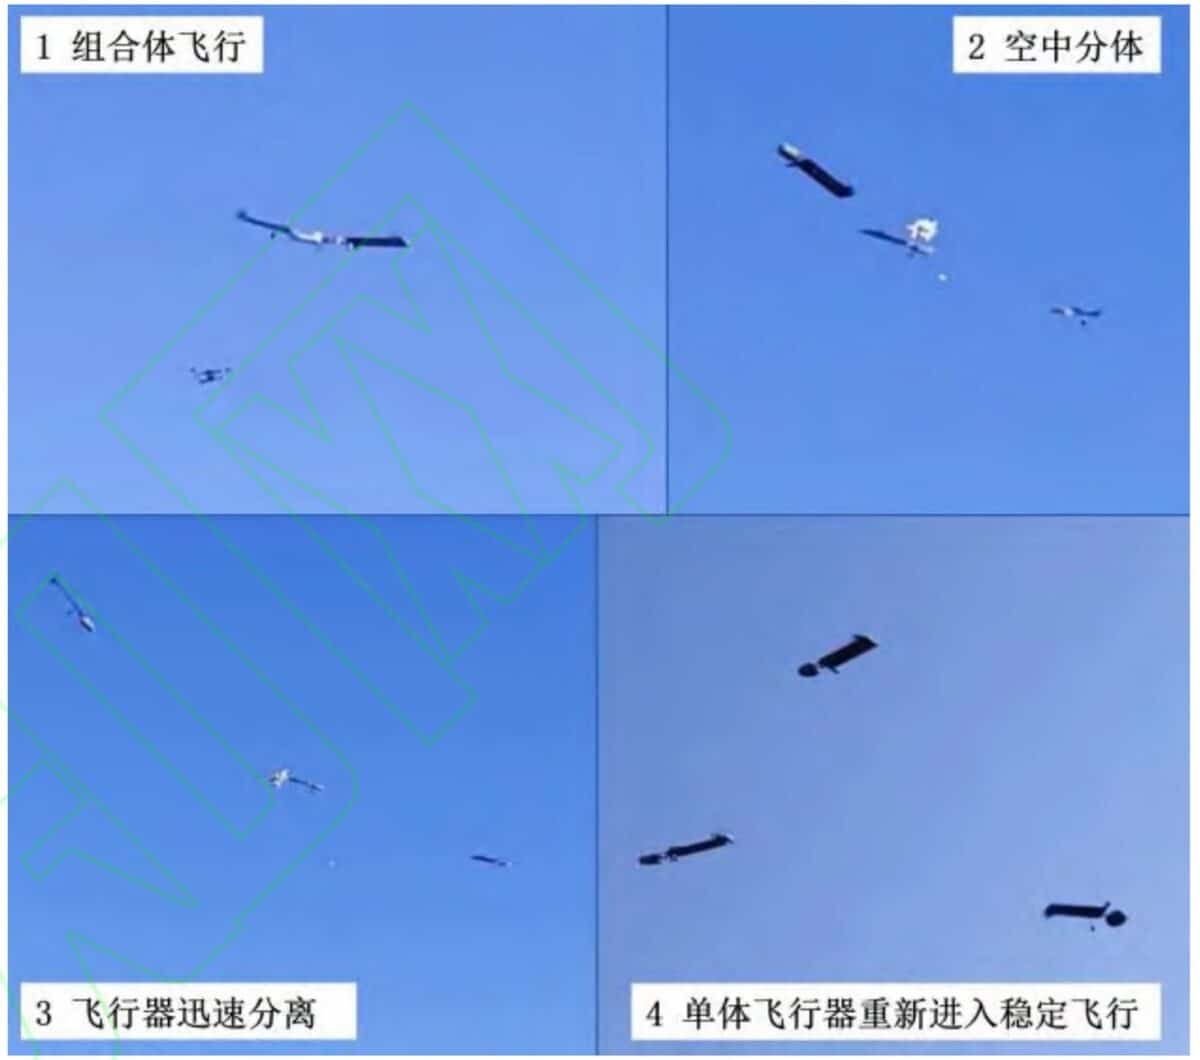 Беспилотники разделаются во время полета / © Nanjing University of Aeronautics and Astronautics